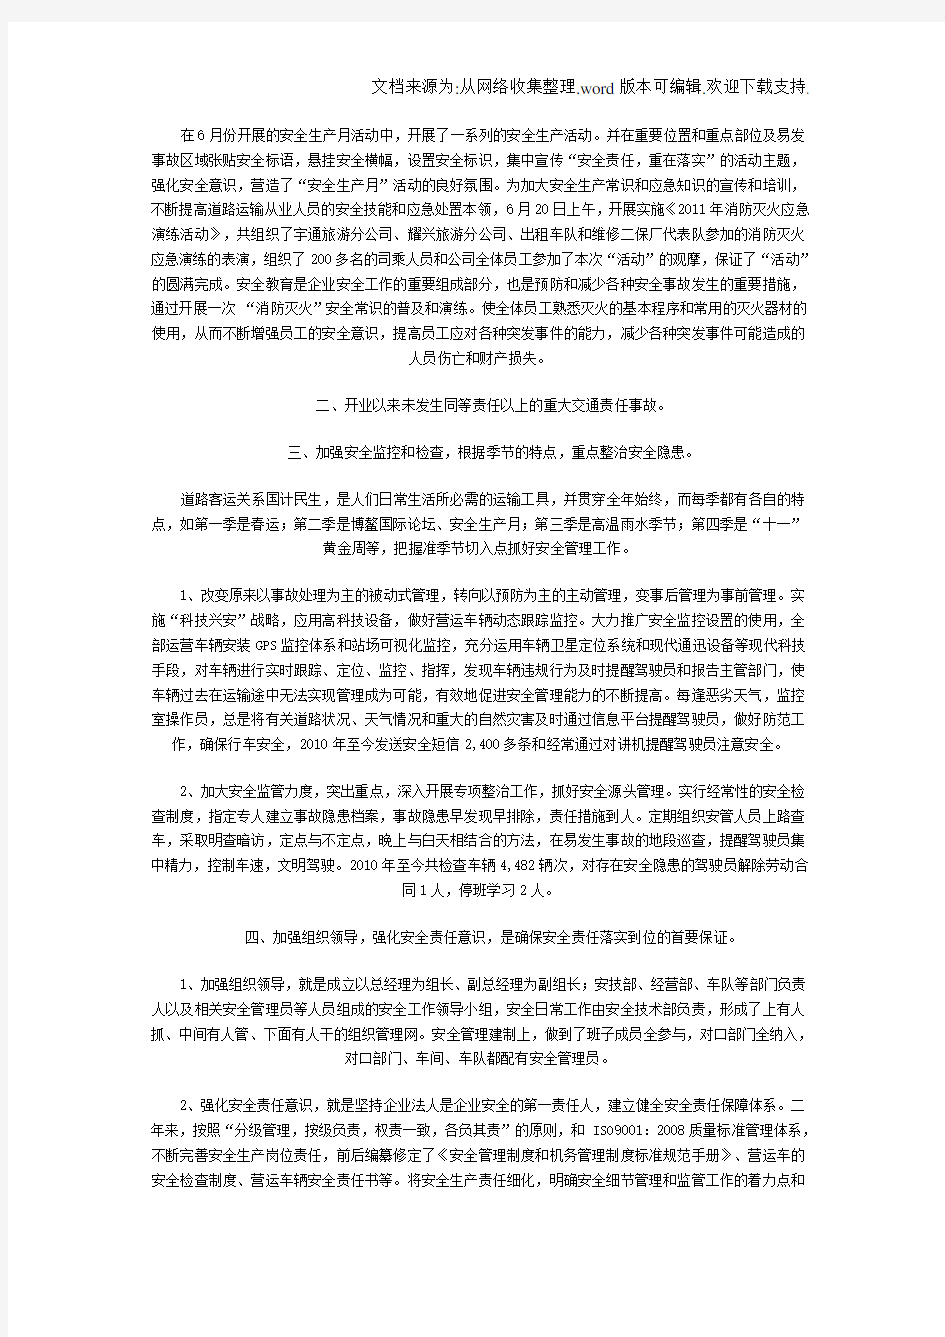 郑州宇通客车股份有限公司海南旅游客运分公司